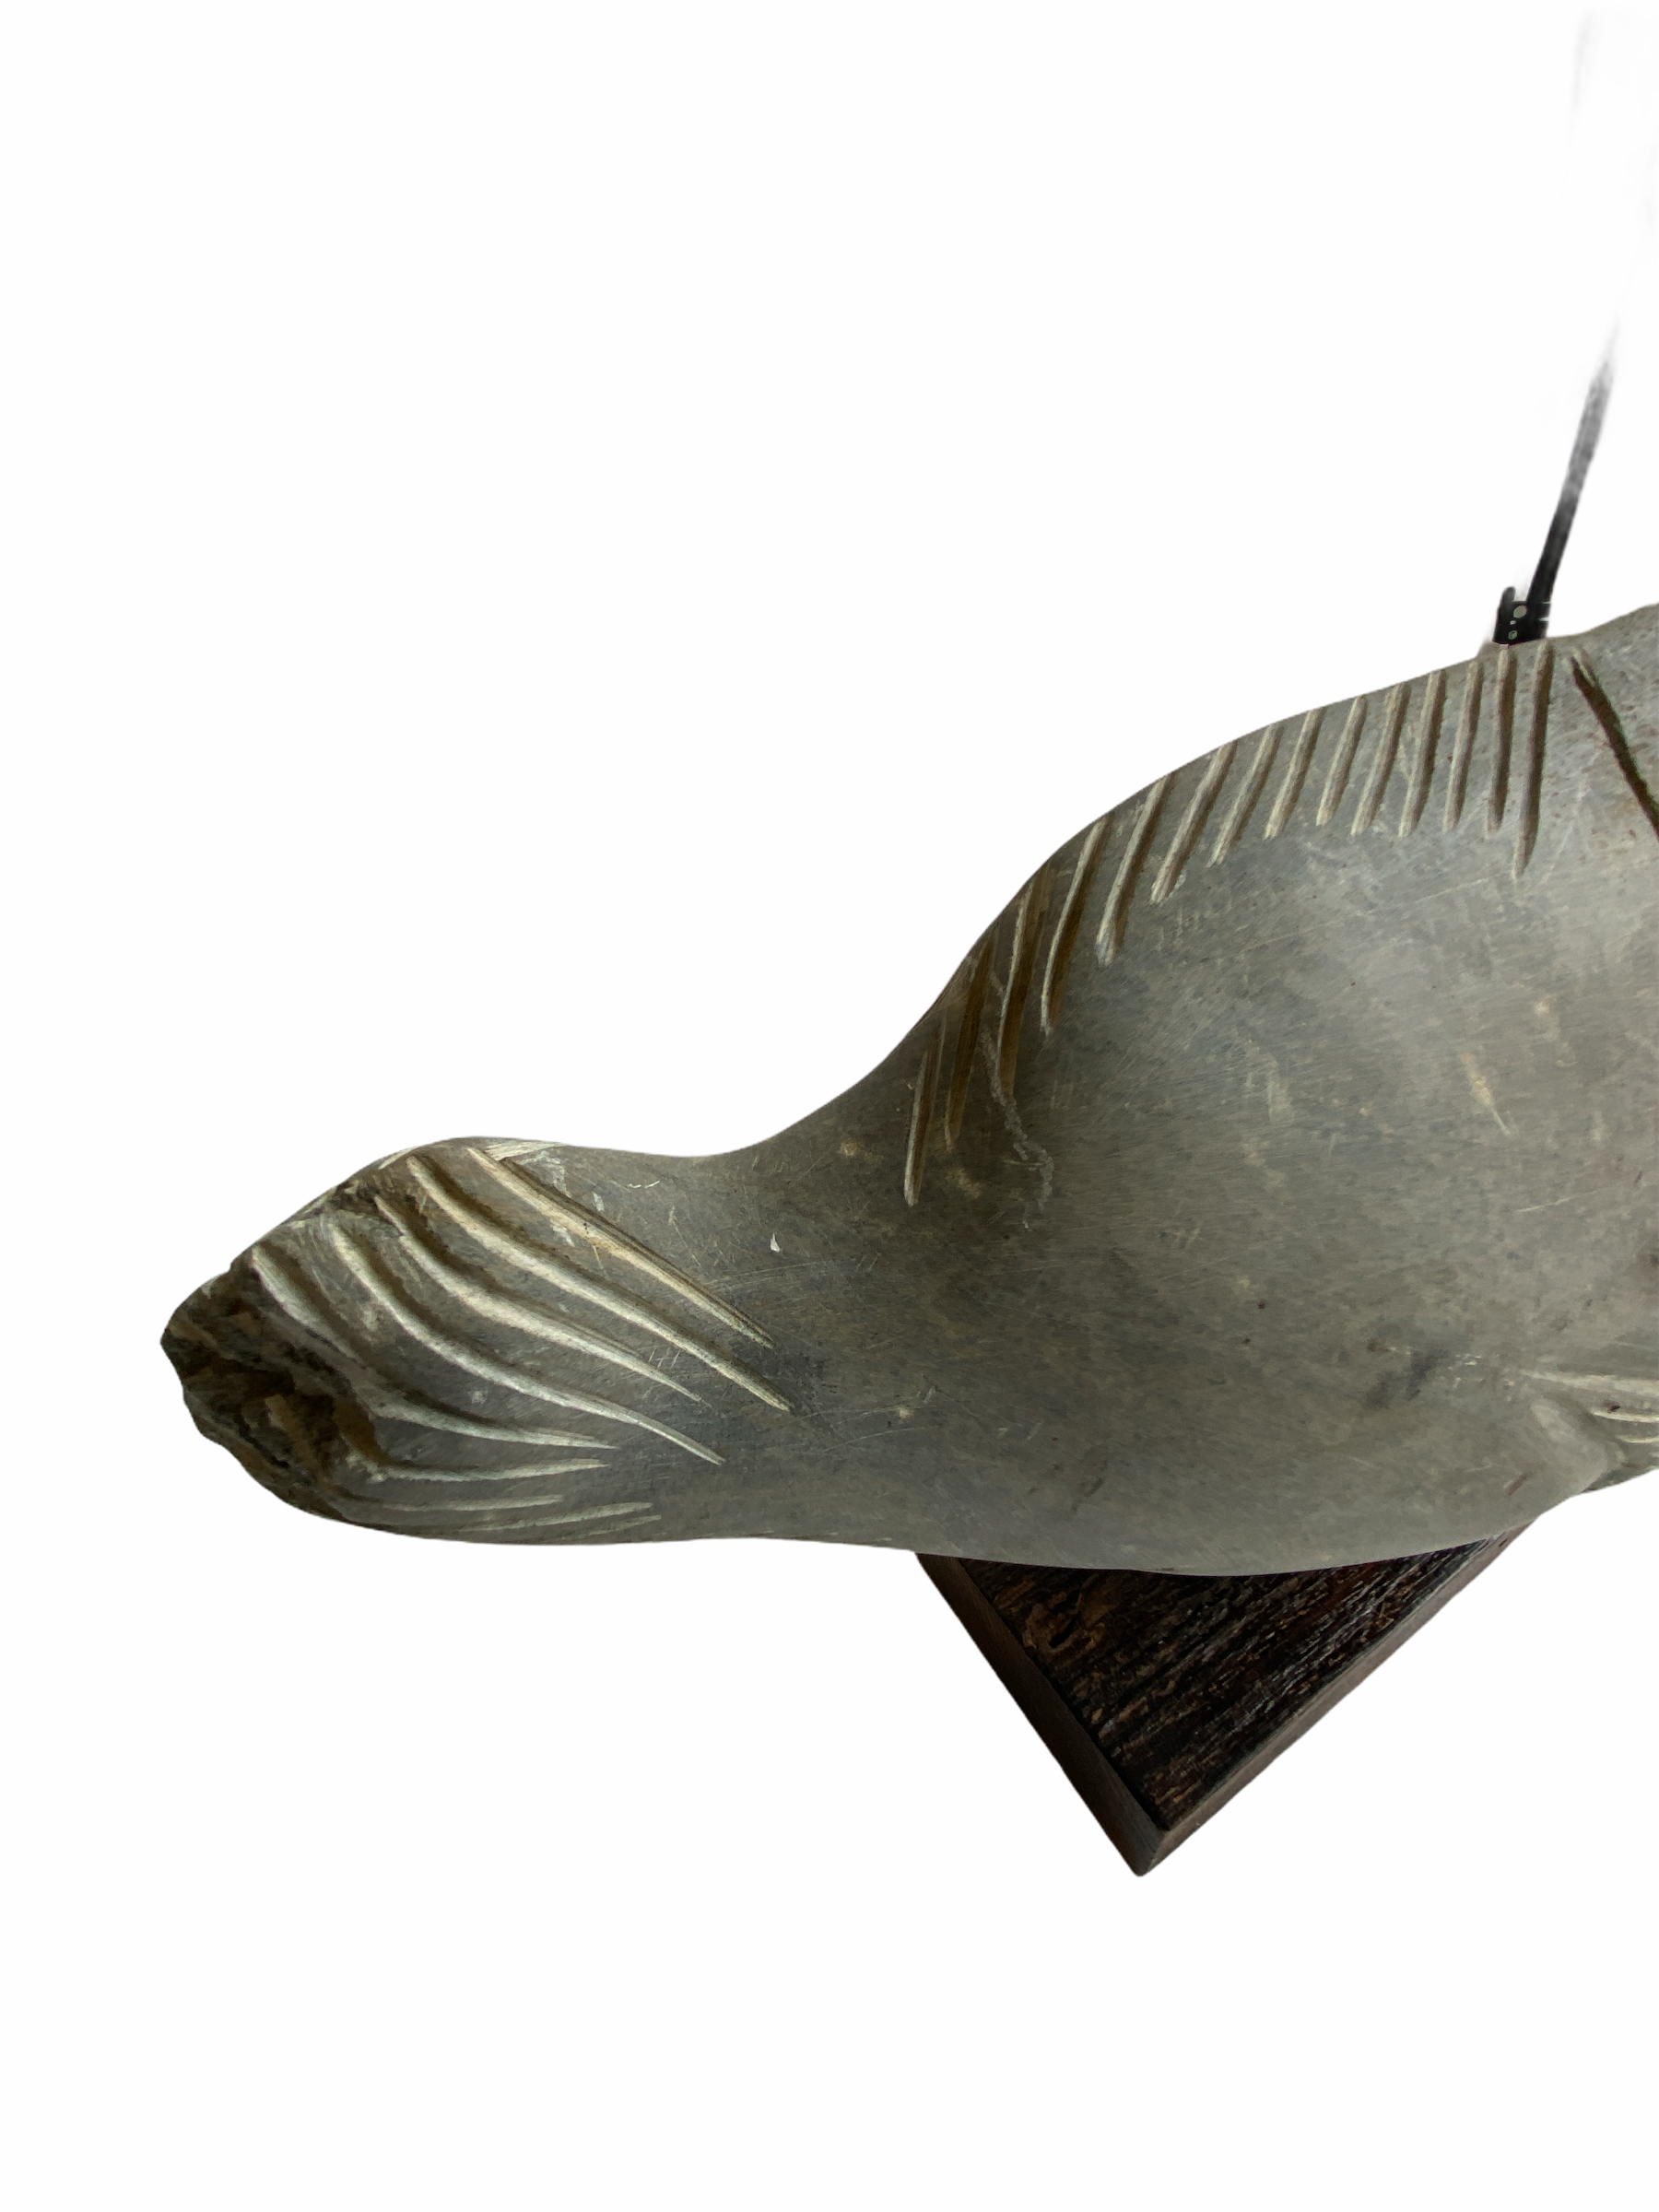 Stone Fish Sculpture - Zimbabwe (01)